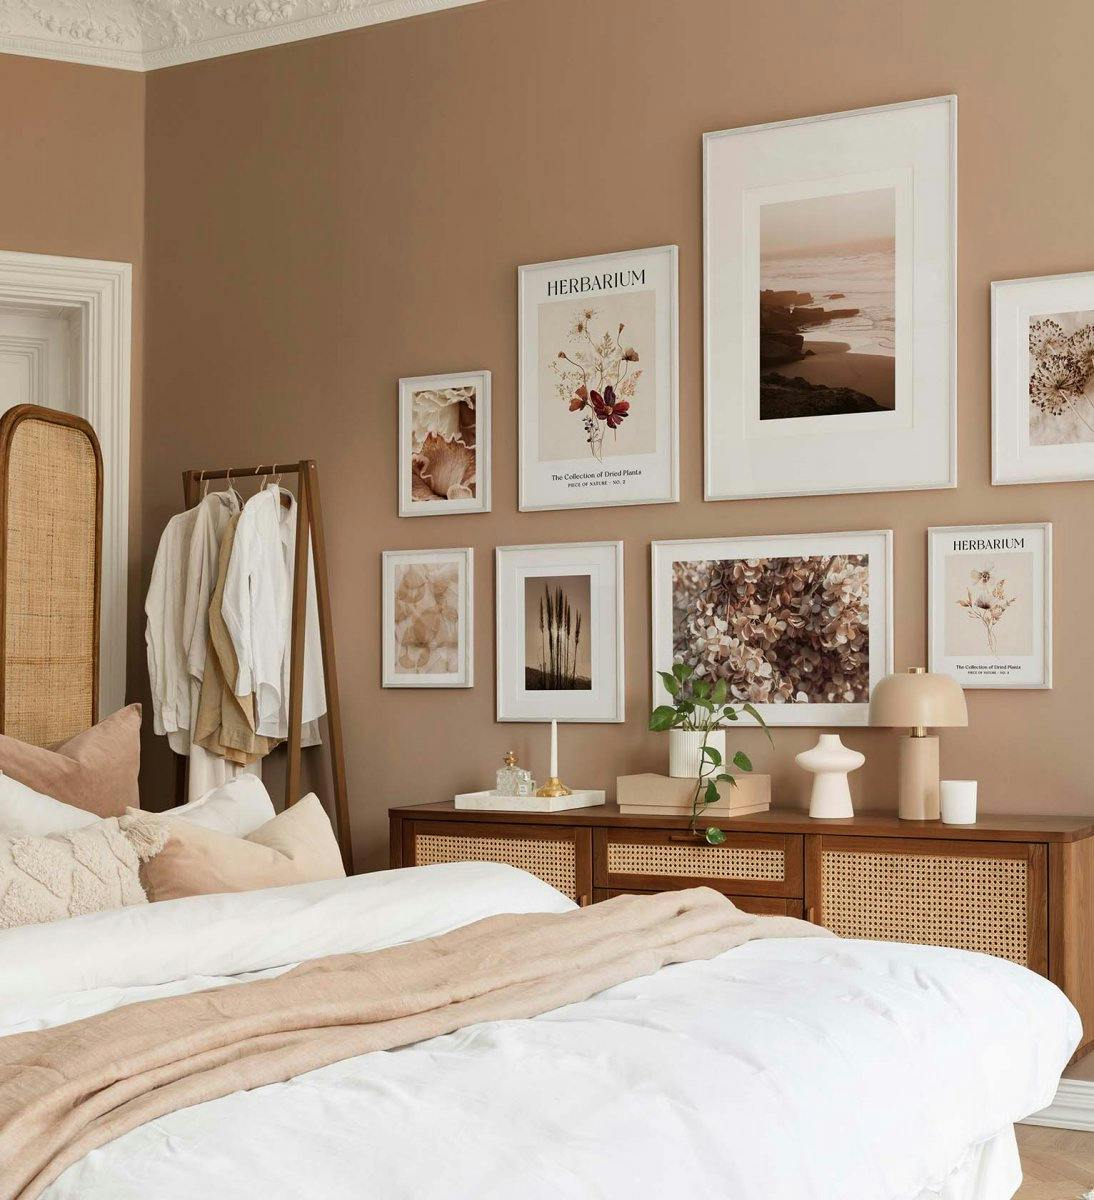 Parete gallery botanica e vicina alla natura nei colori marrone e beige con cornici in legno bianco per la camera da letto